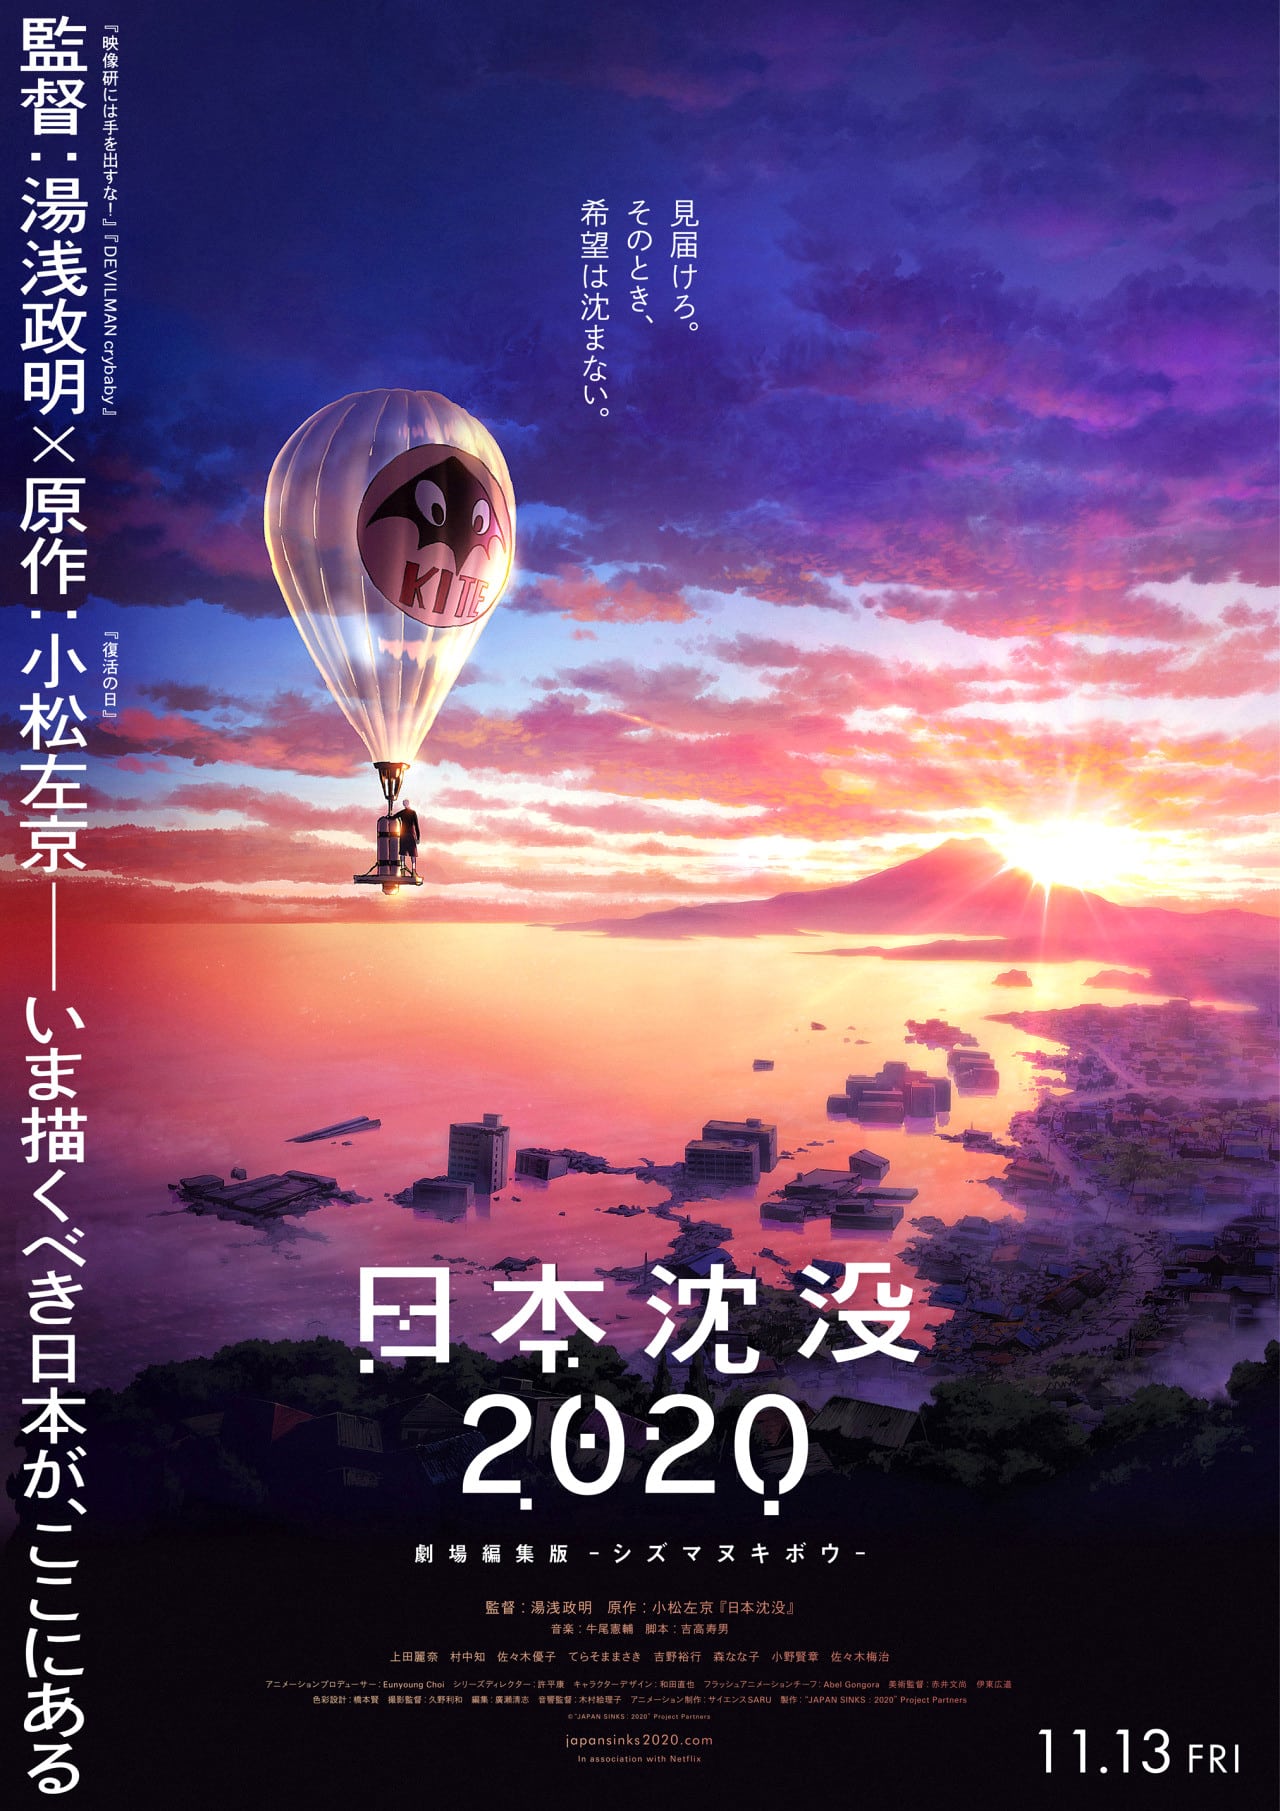 Annonce d'un film compilatif pour l'anime Japan Sinks 2020